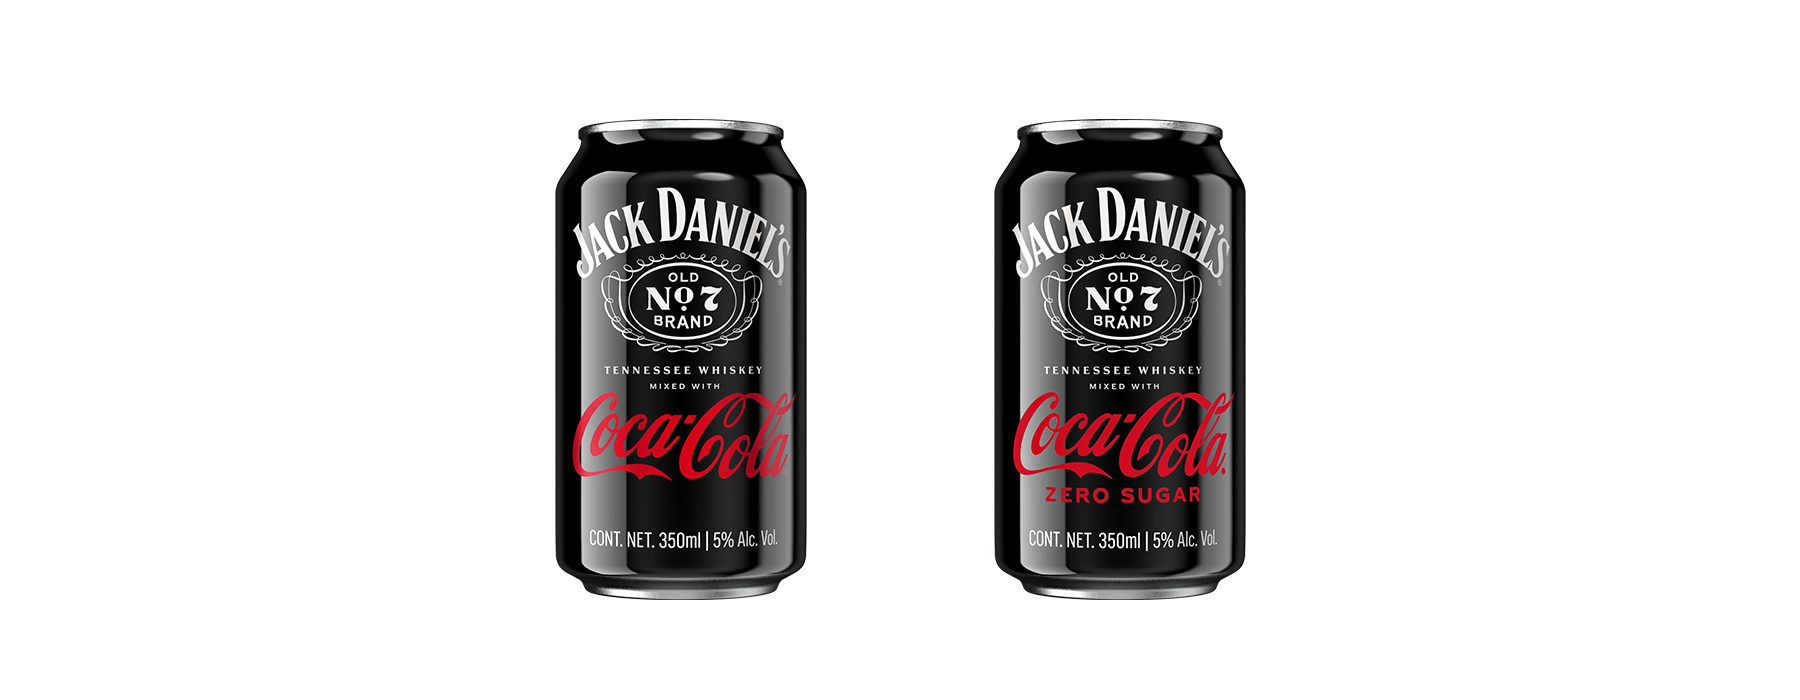 Dos latas de Jack Daniel's & Coca-Cola